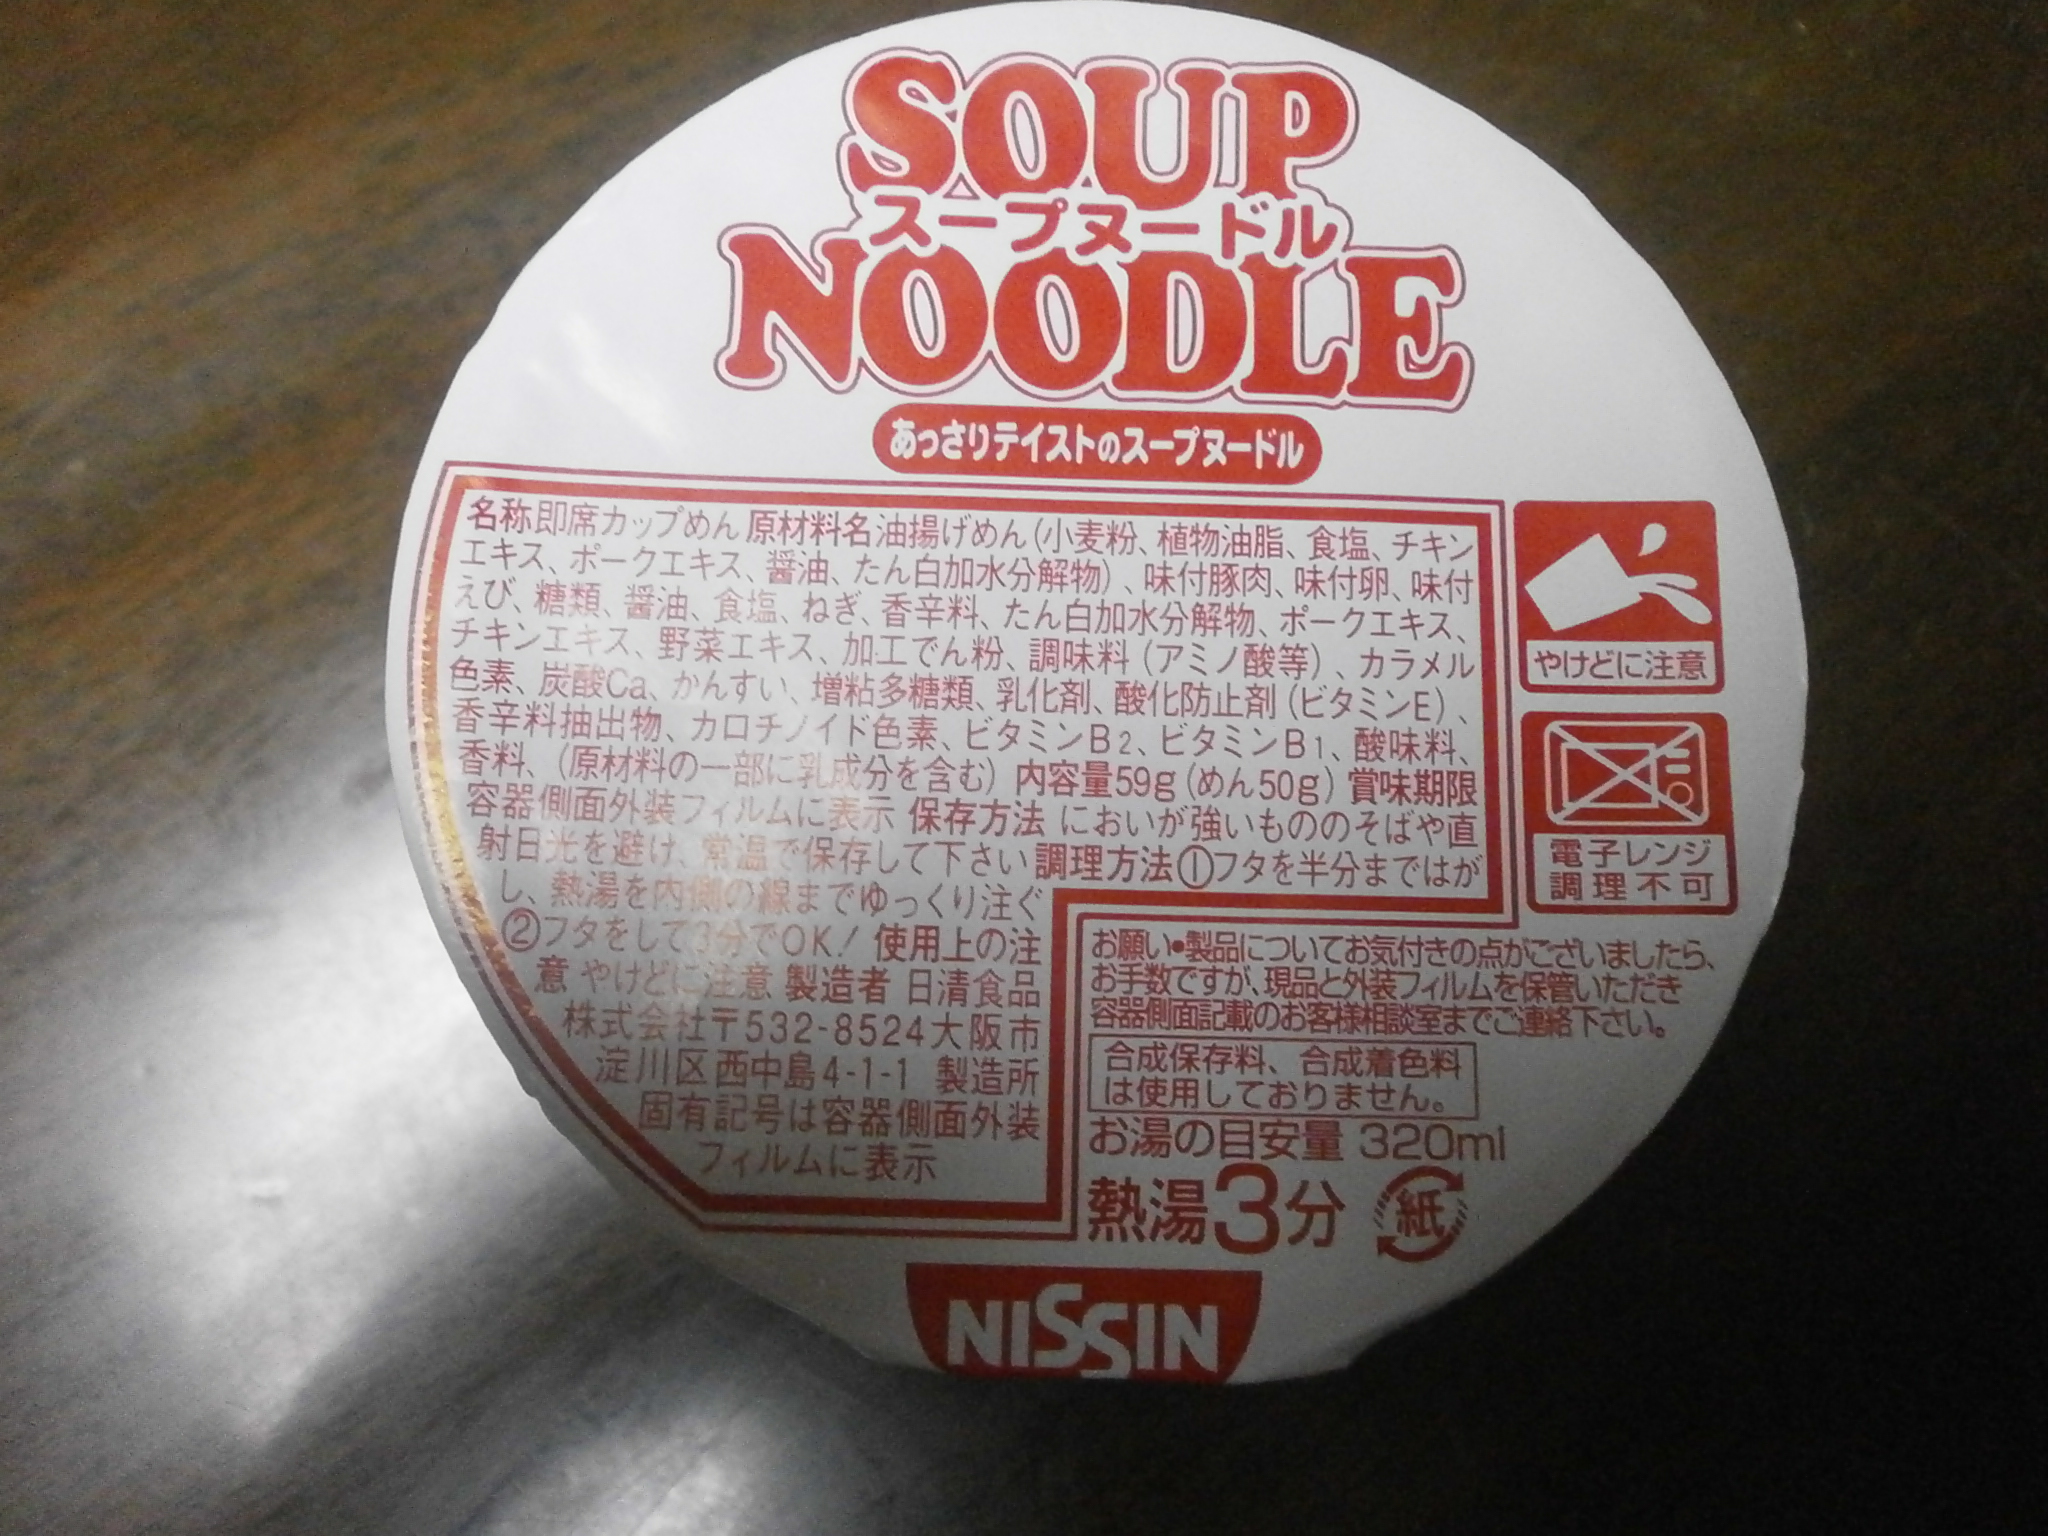 Noodle Soup (Taste frankly).